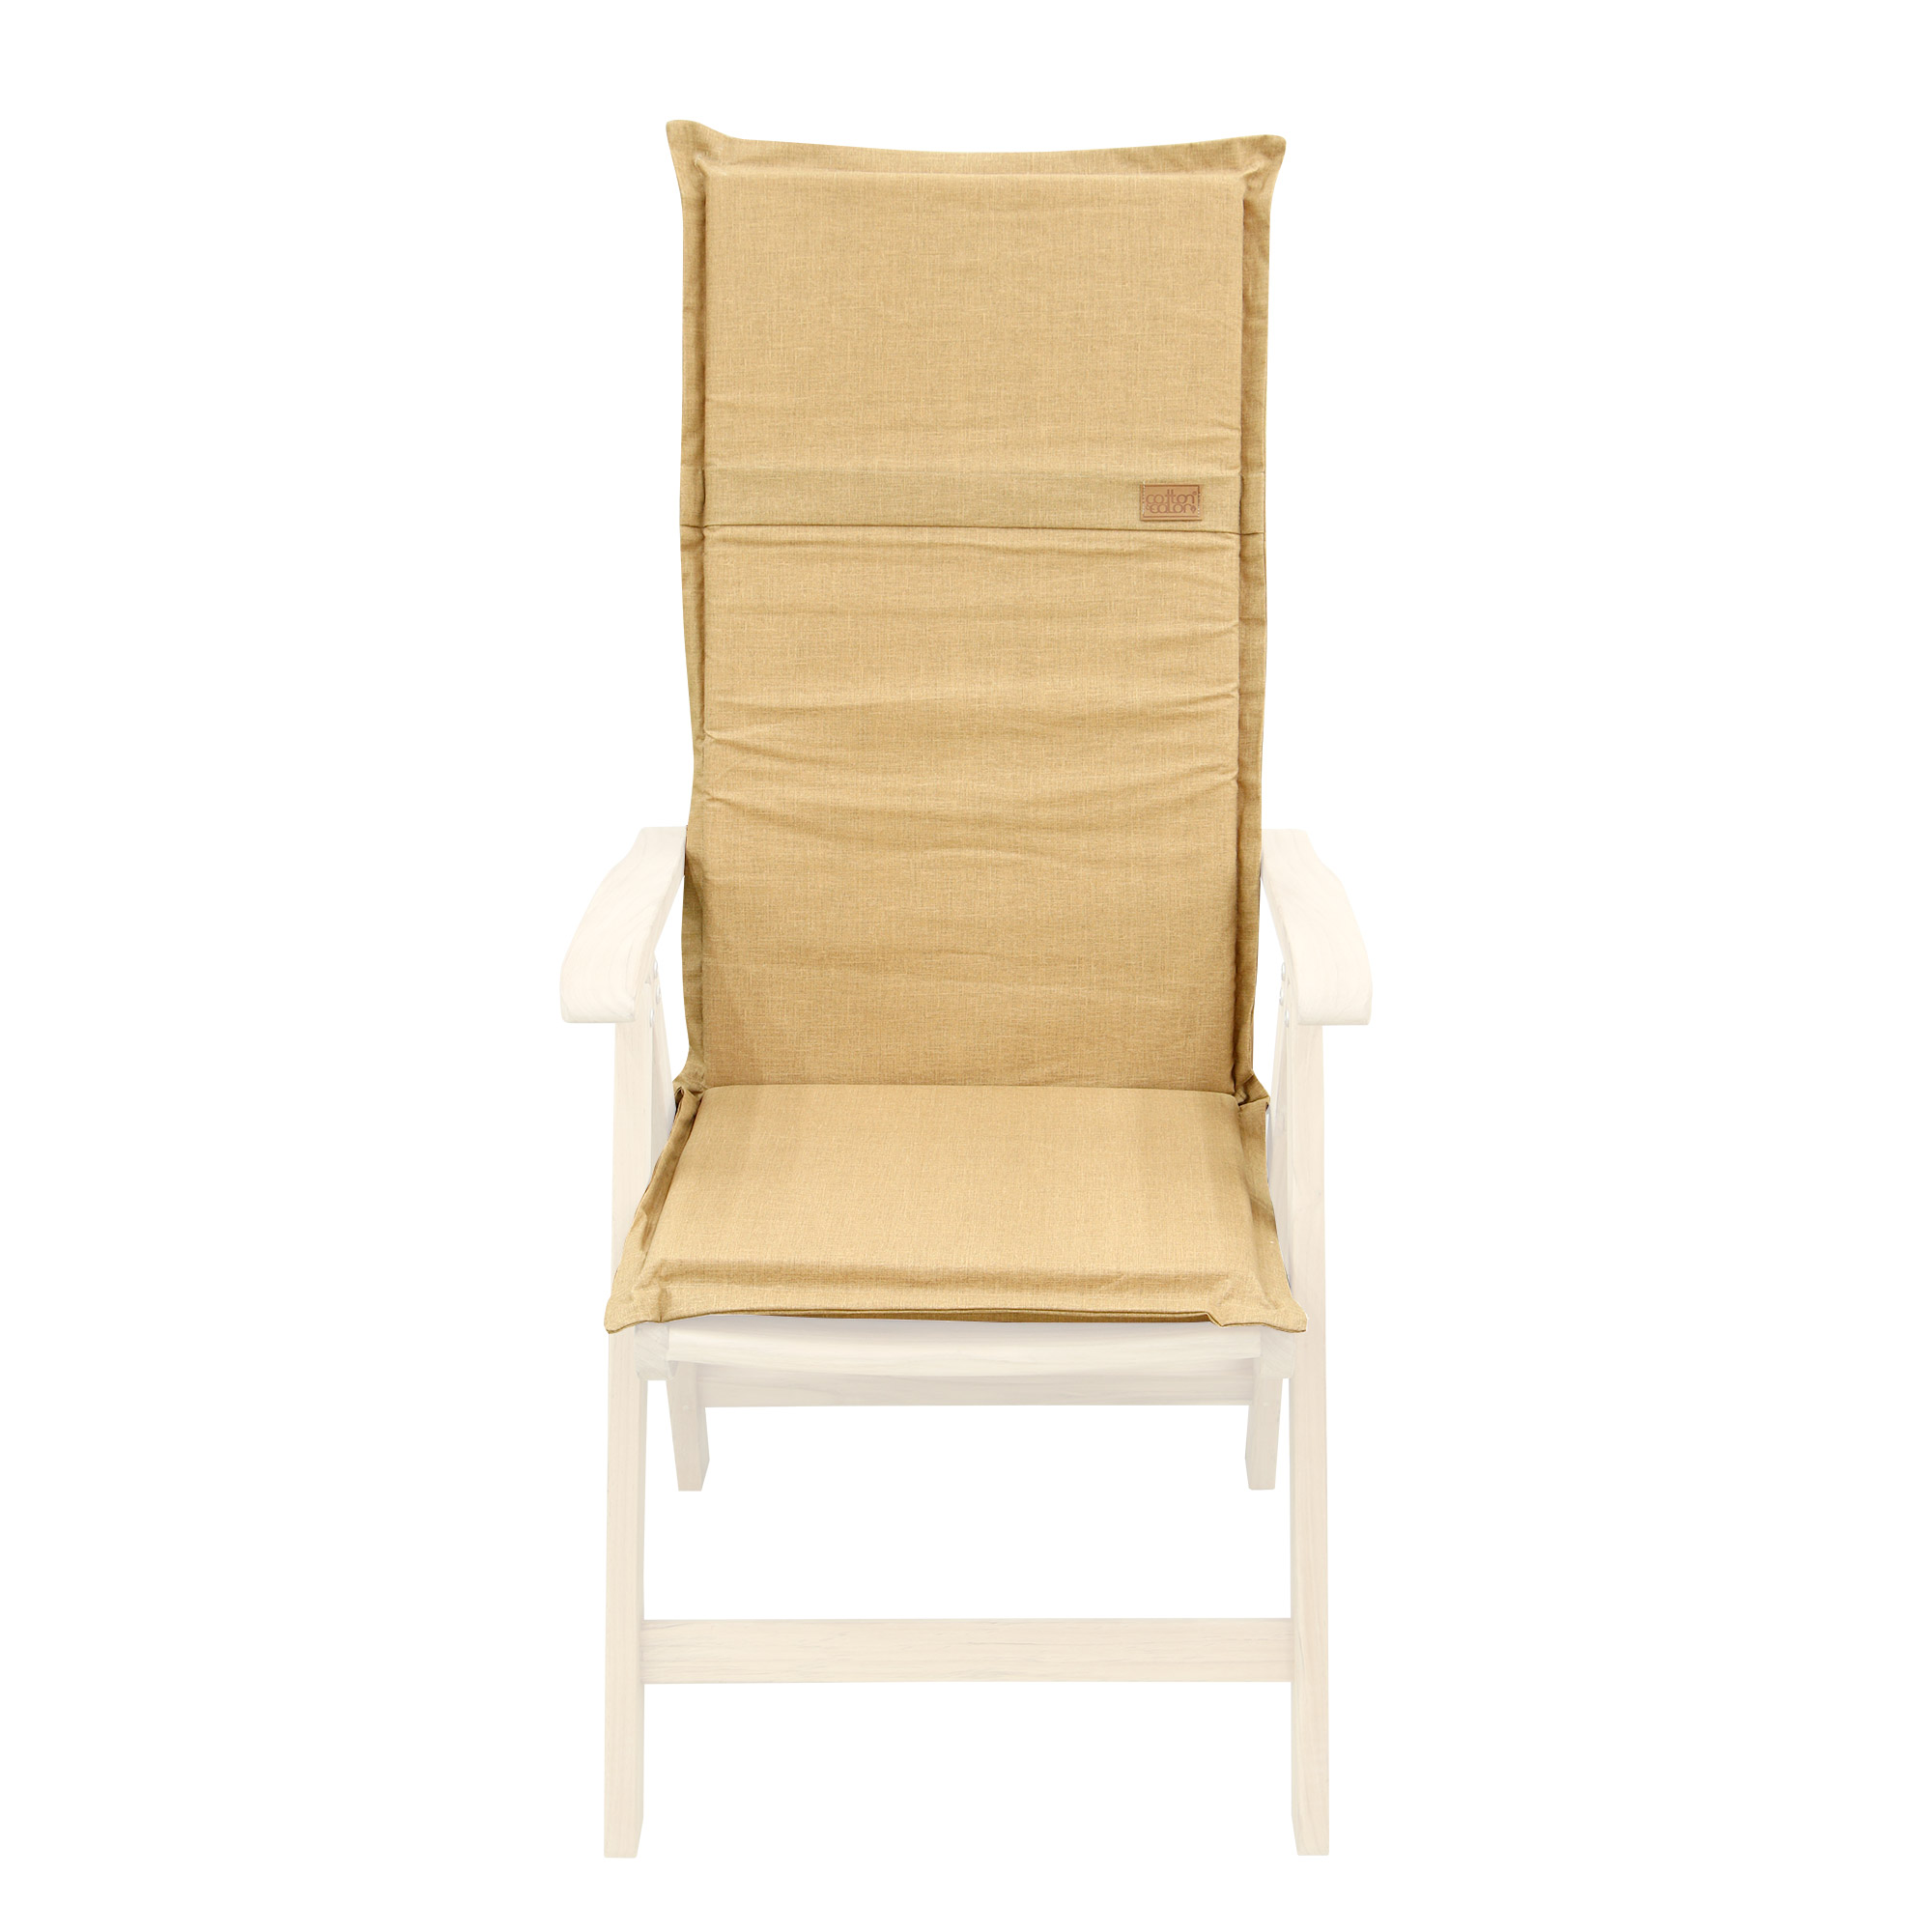 Подушка для кресла Morbiflex высокая спинка 125x52 Коричневый подушка автомобильная косточка на подголовник велюр коричневый ромб 16 х 24 см